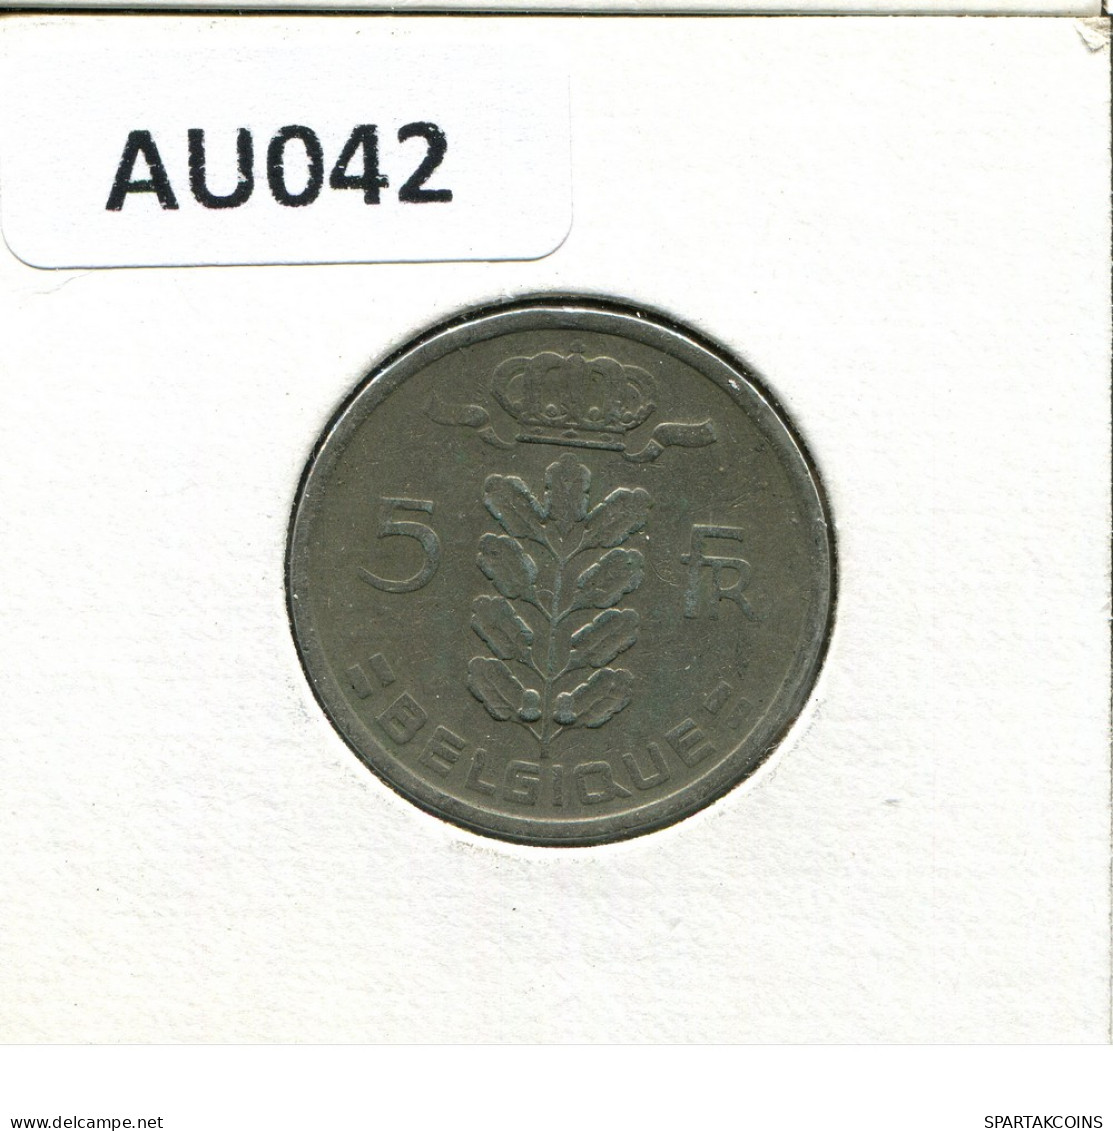 5 FRANCS 1949 Französisch Text BELGIEN BELGIUM Münze #AU042.D - 5 Franc